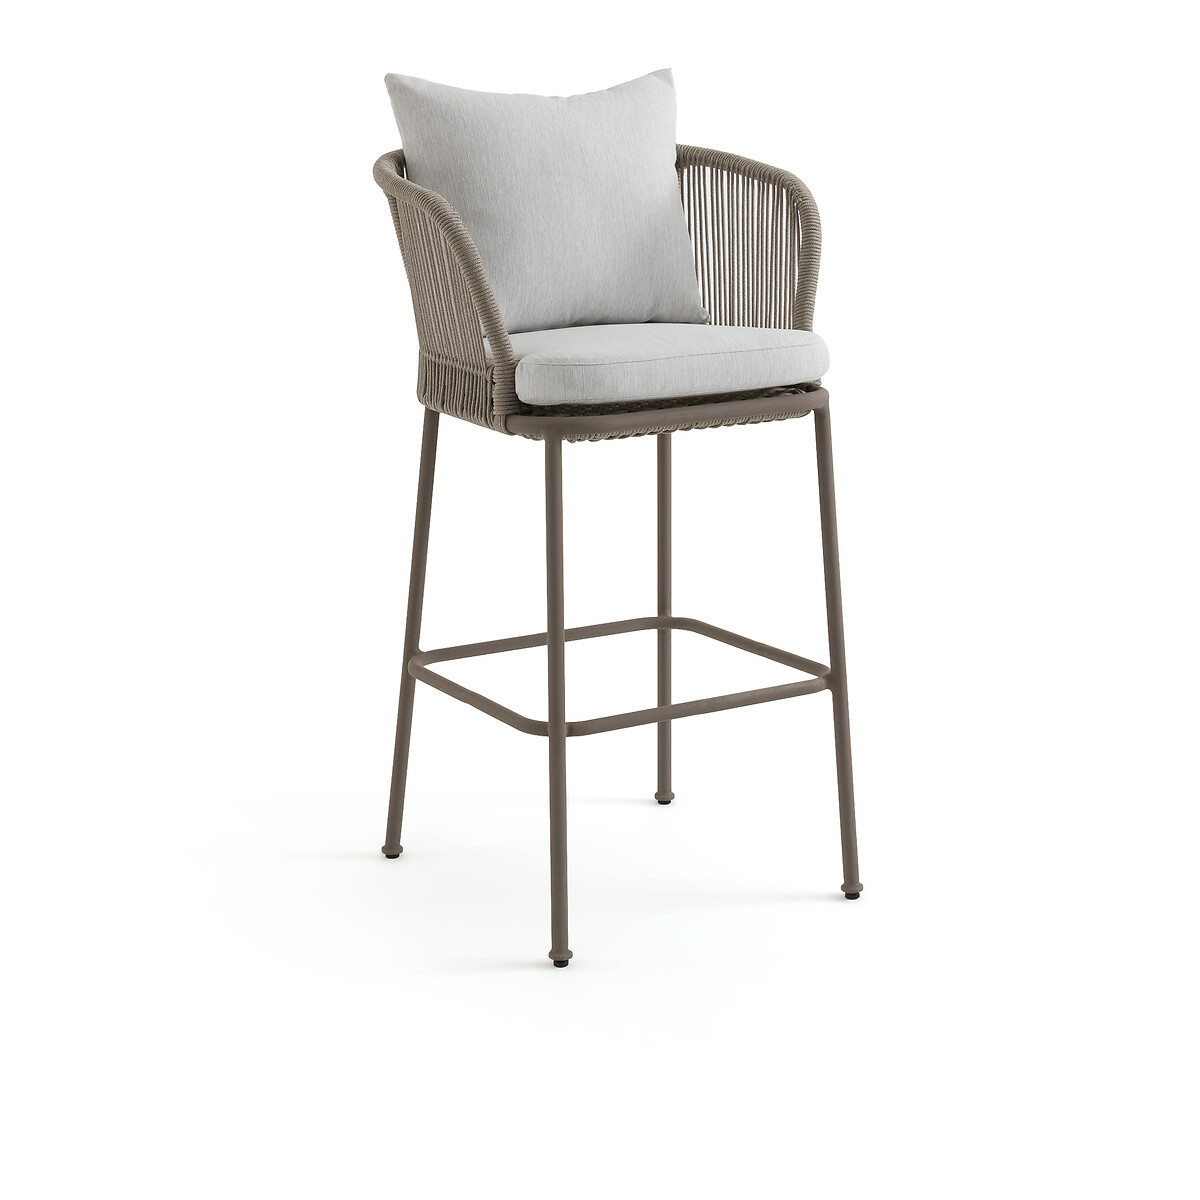 Кресло столовое для сада высокое Cabestan единый размер каштановый кресло столовое для сада fermyo единый размер бежевый